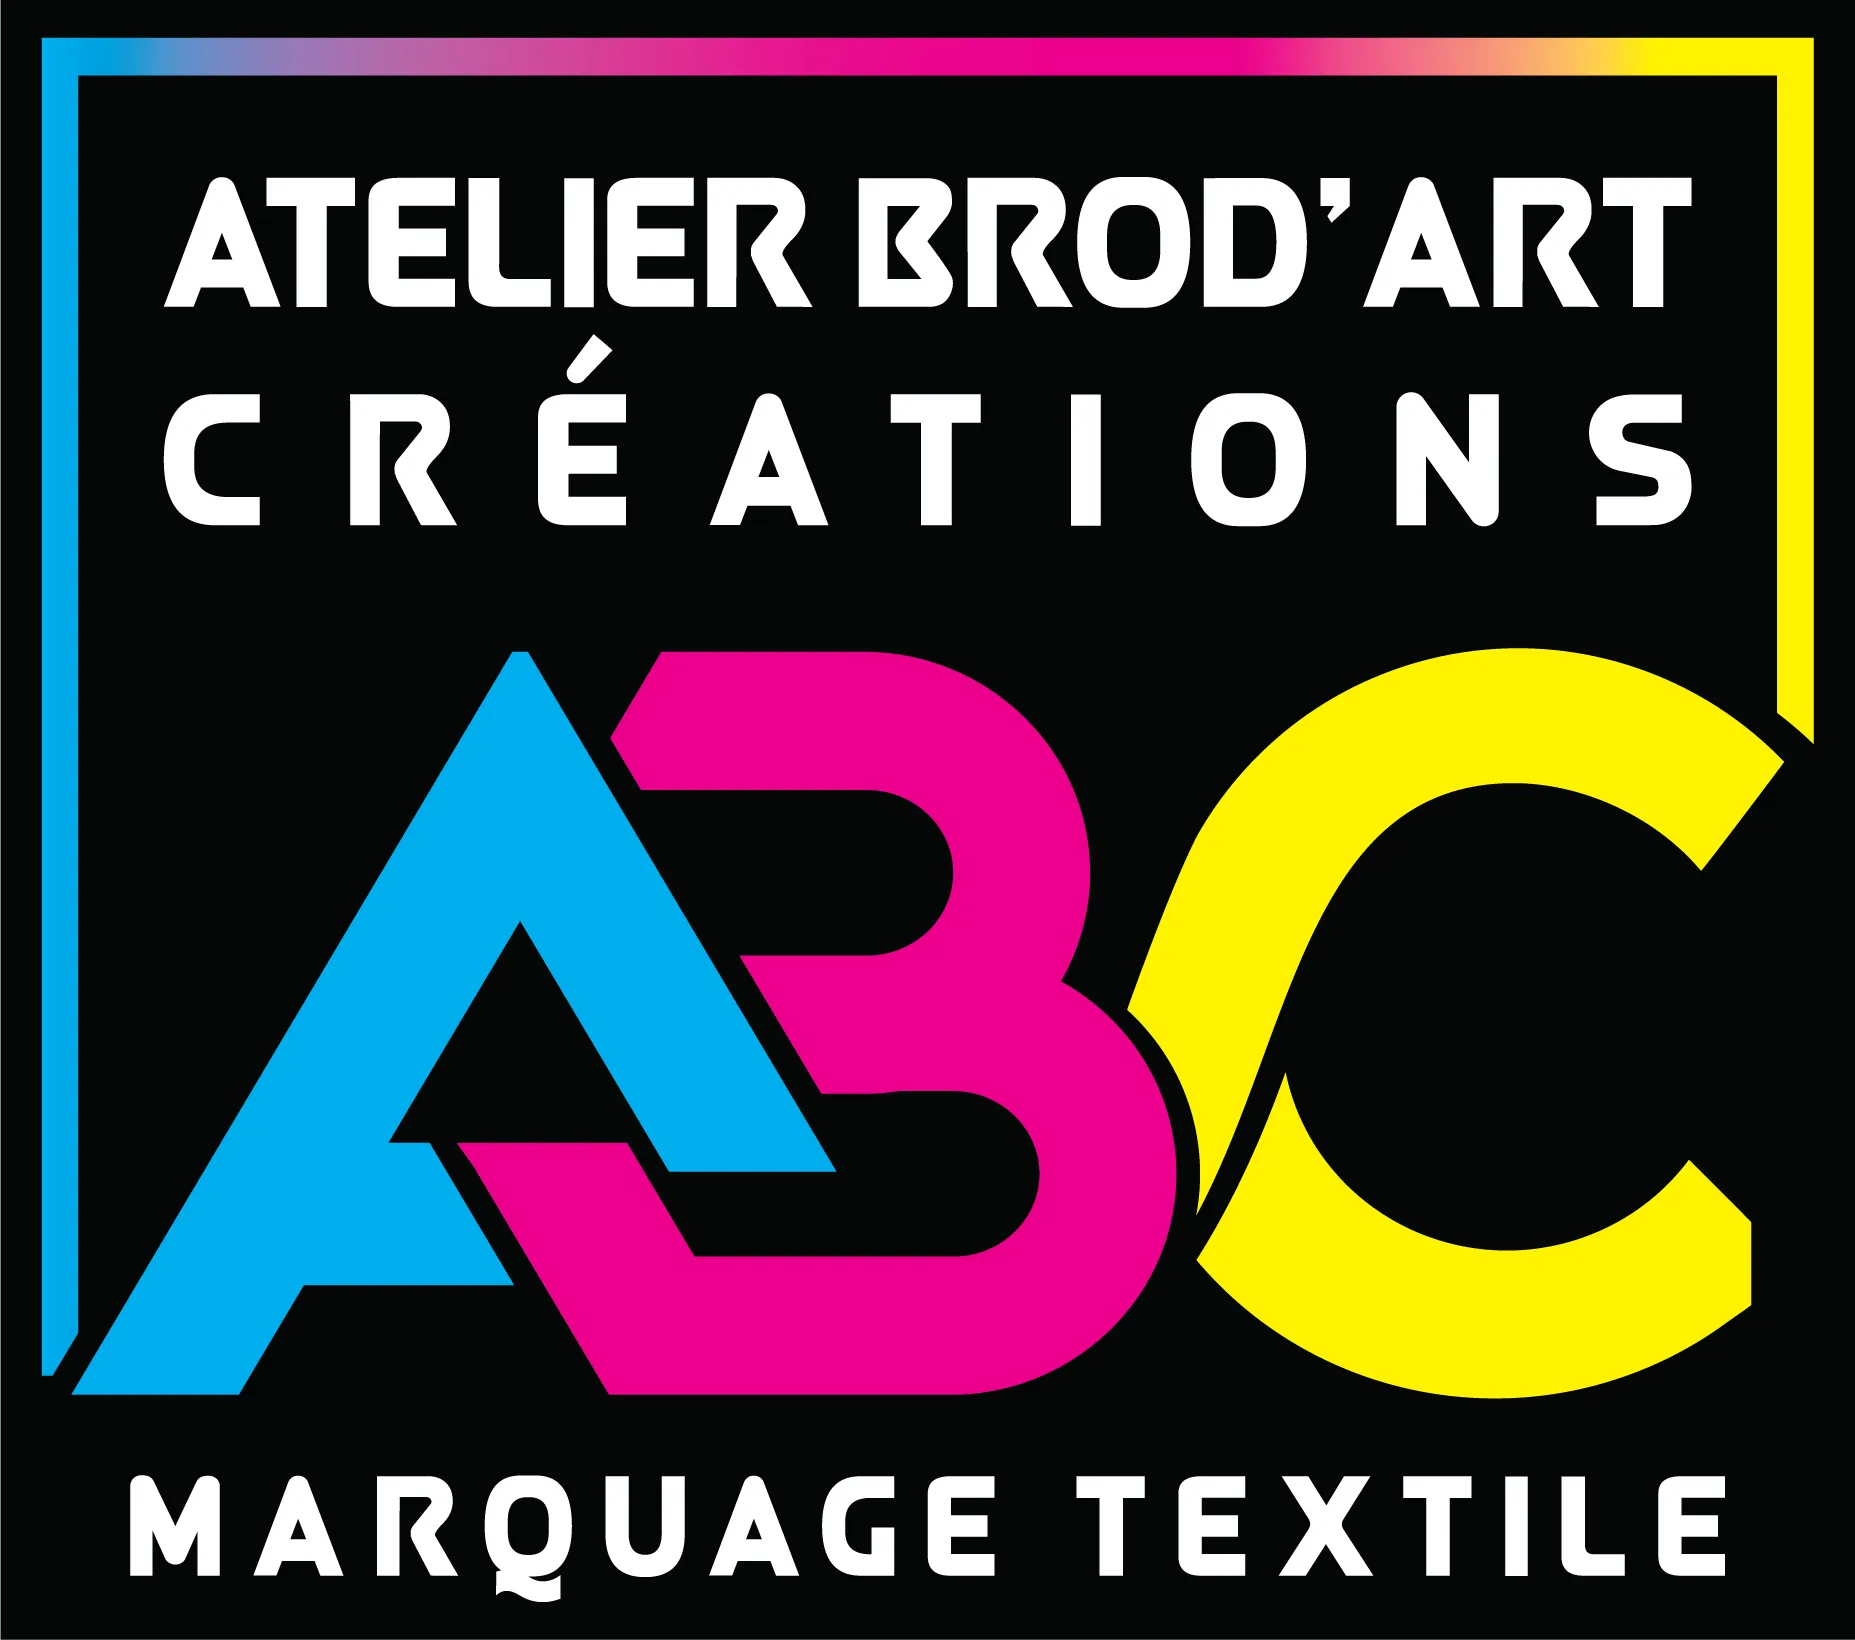 Logo de la société Atelier Brod'Art Créations sur fond noir.